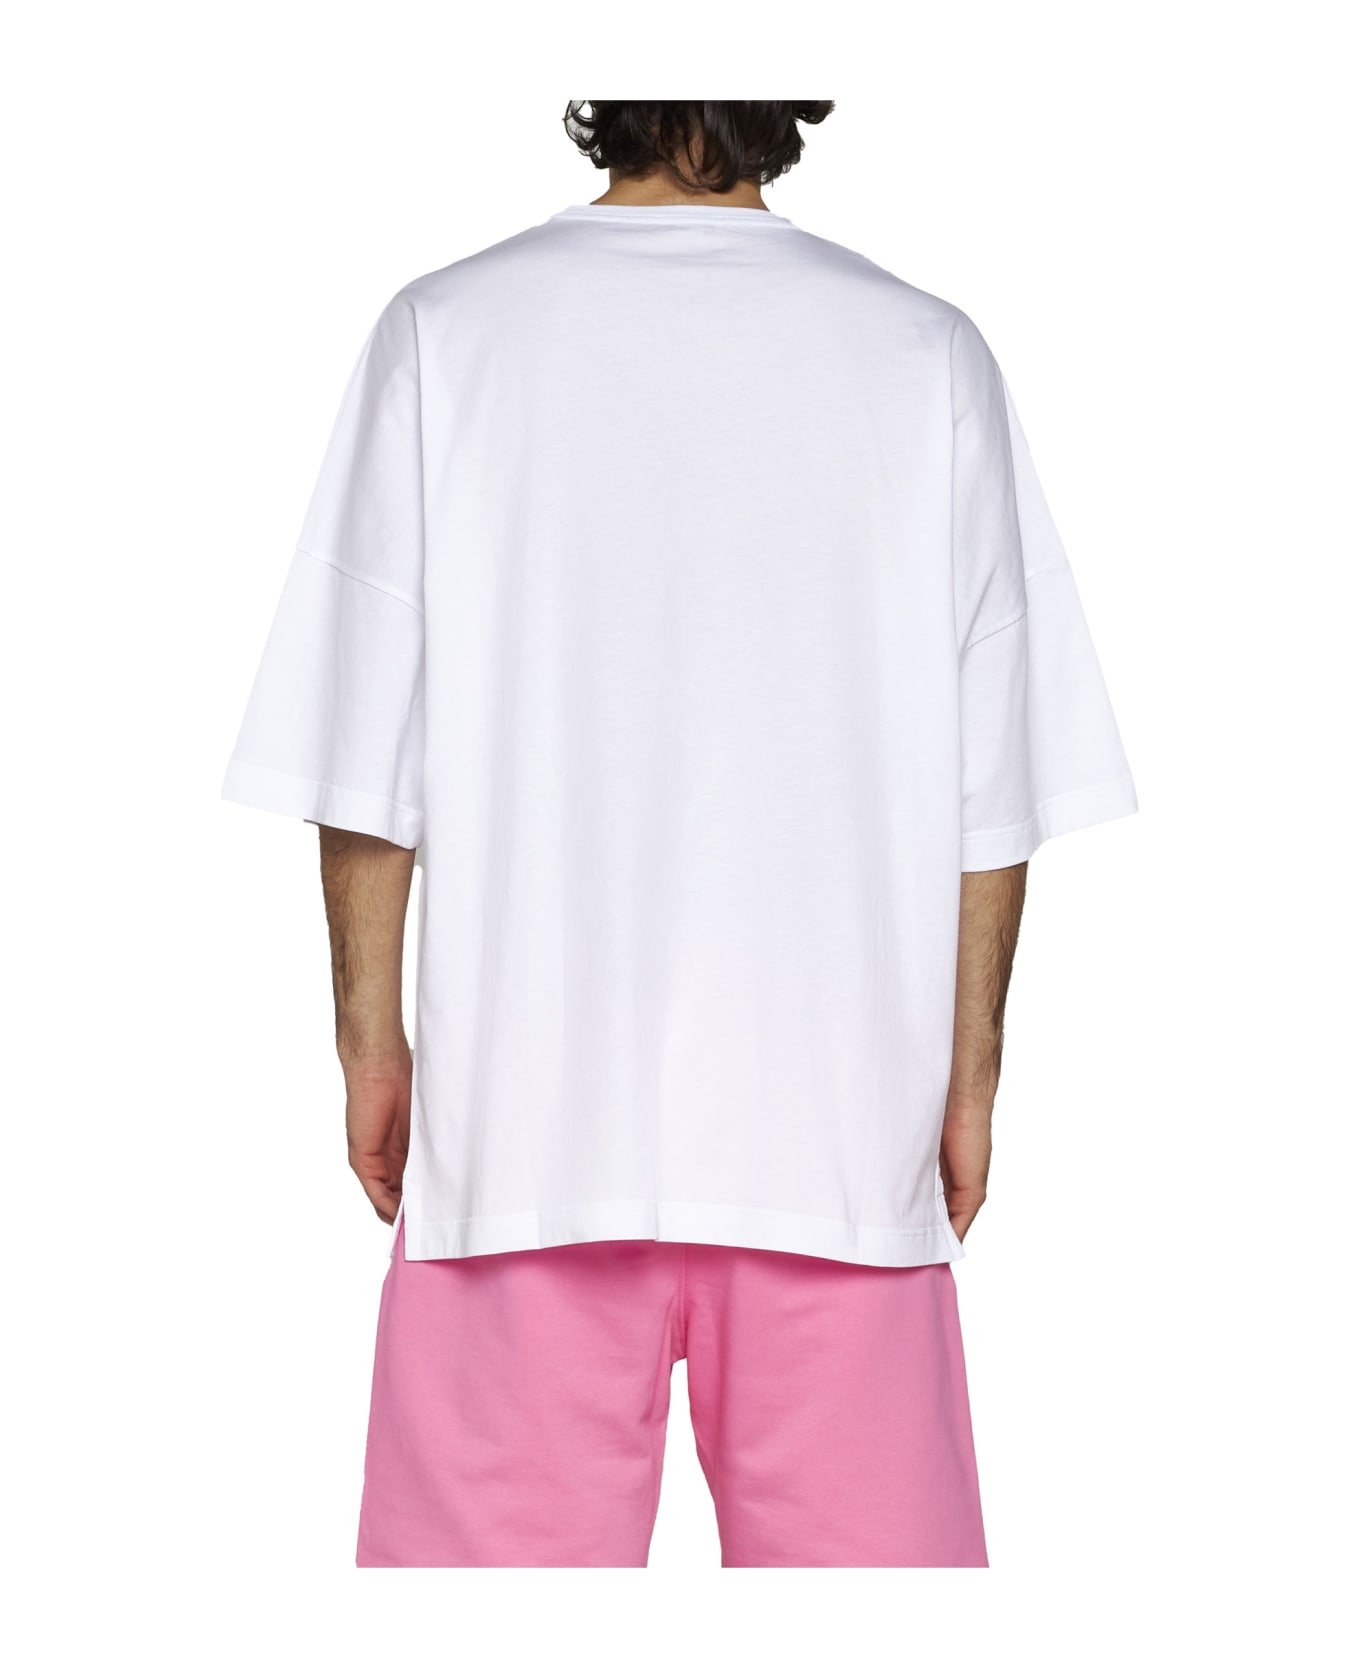 Alexander McQueen T-Shirt - White pink